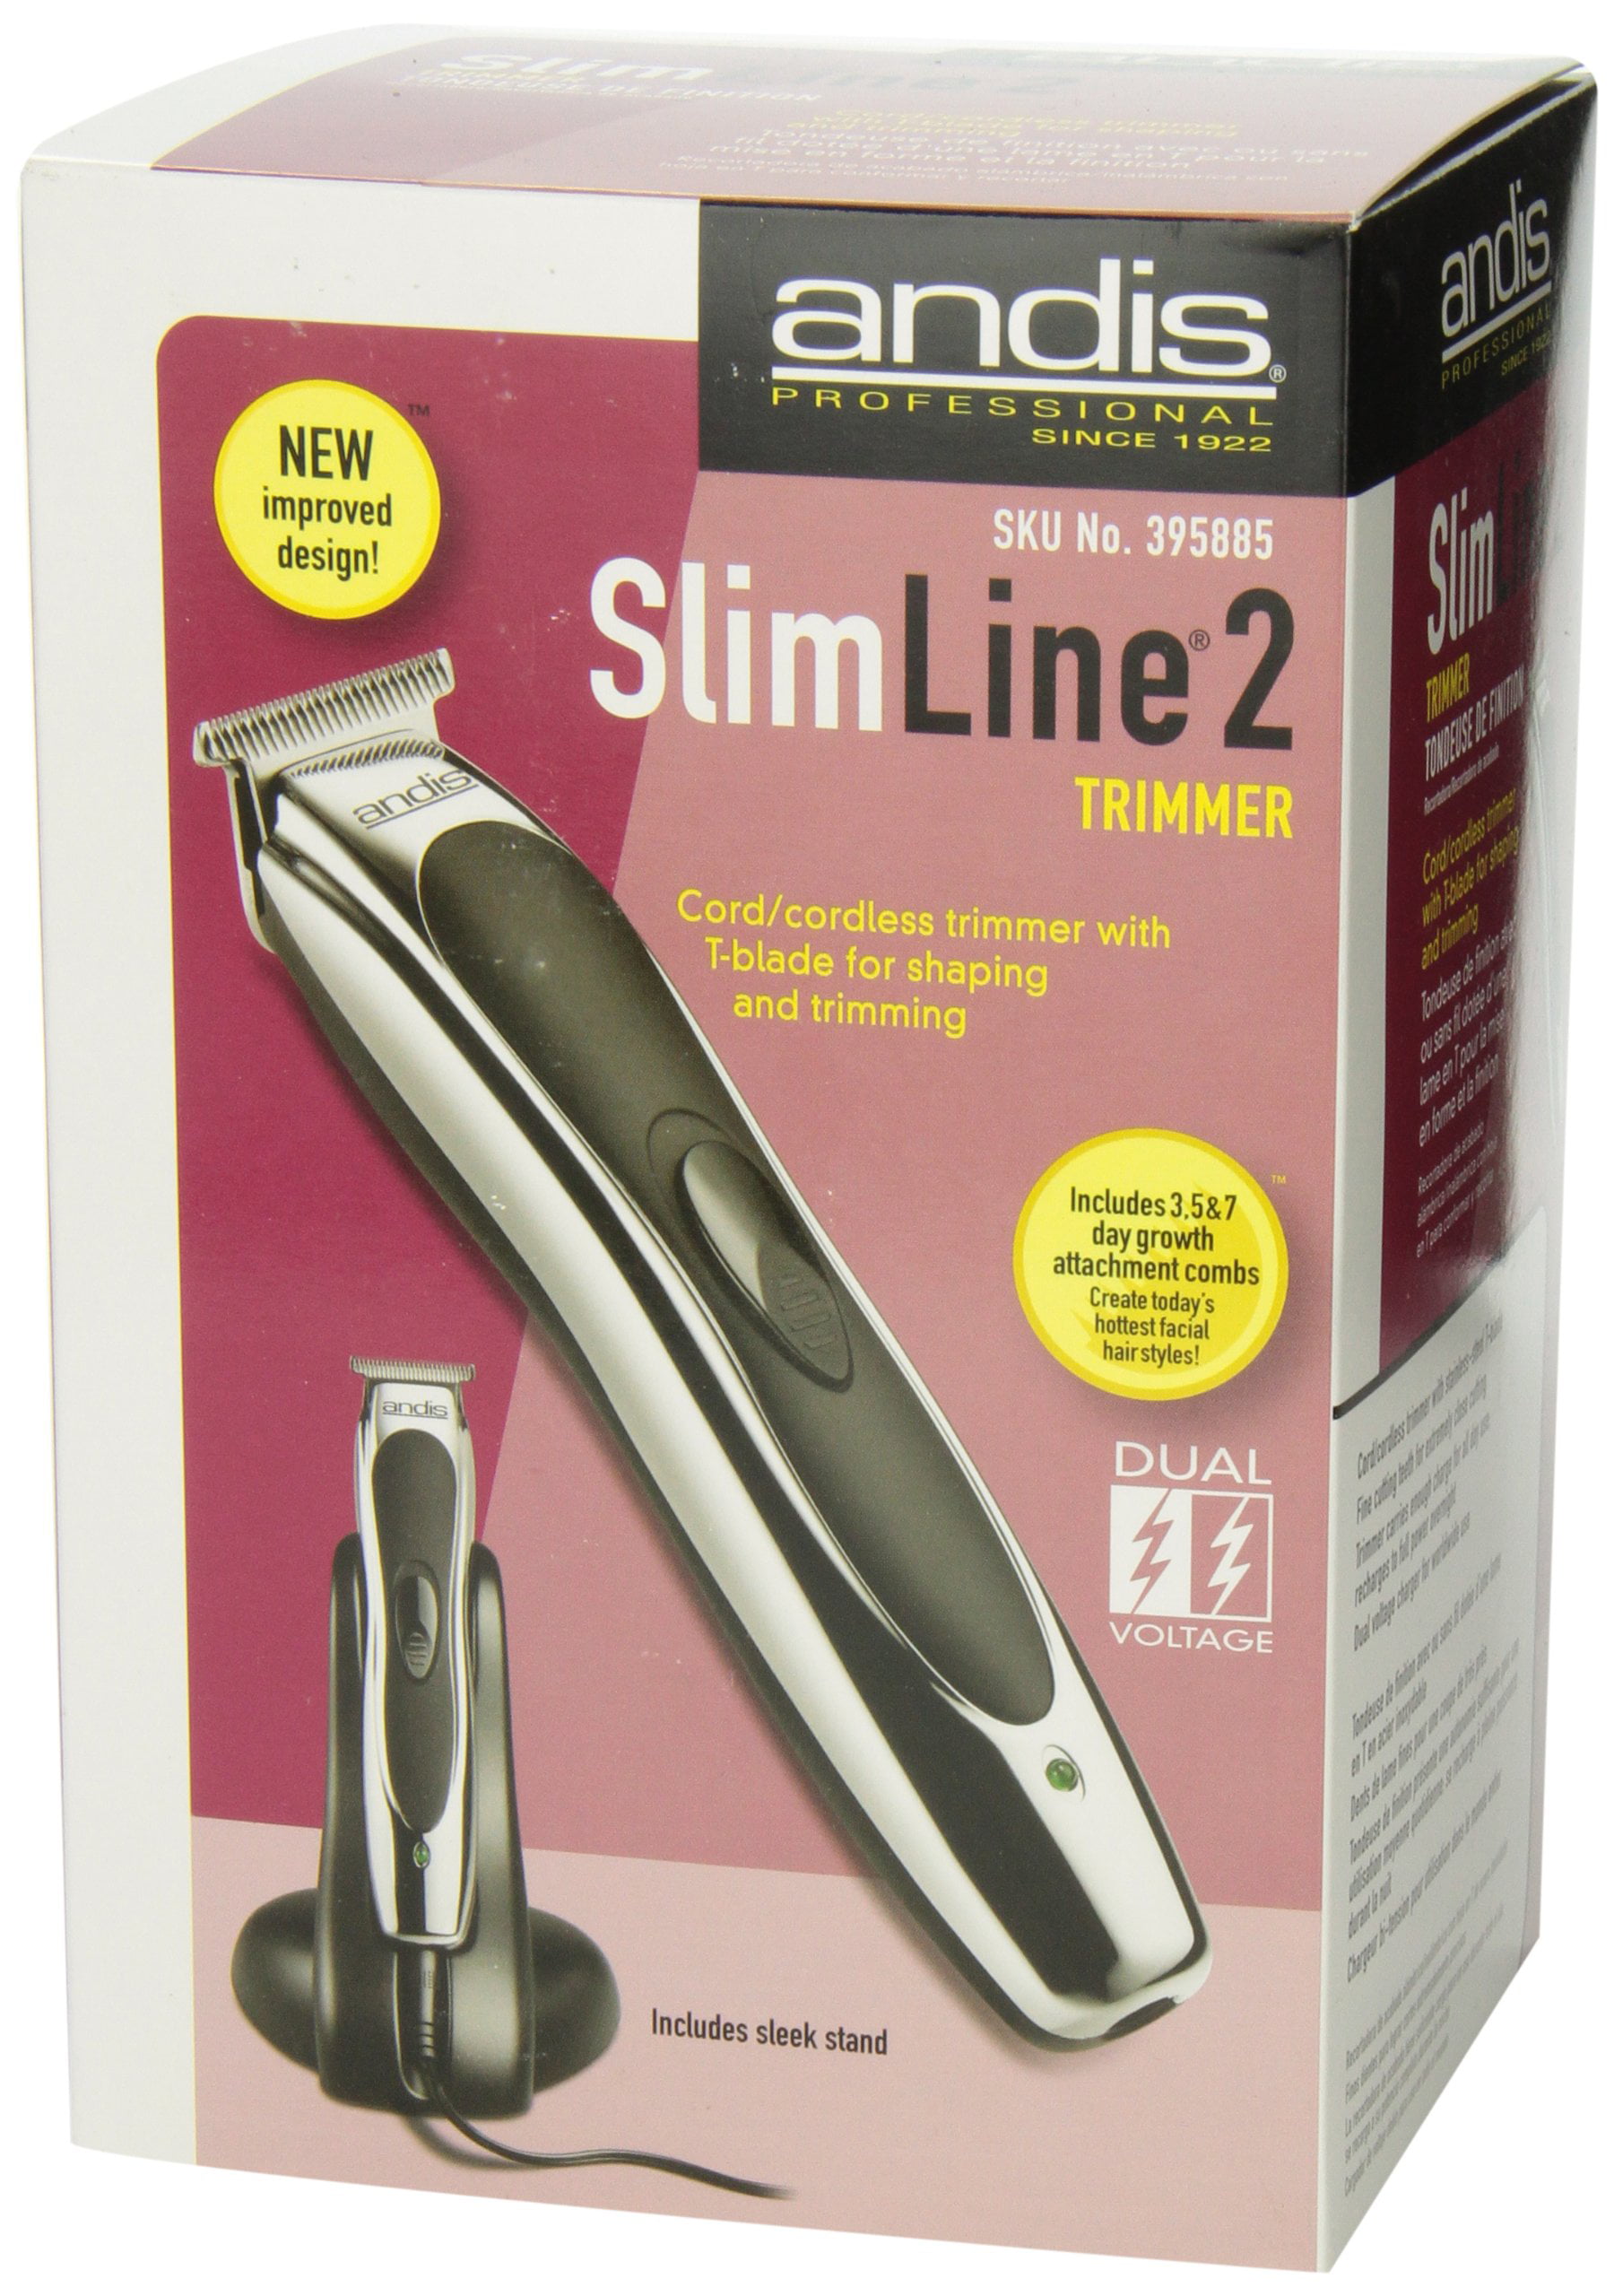 slimline 2 cordless trimmer